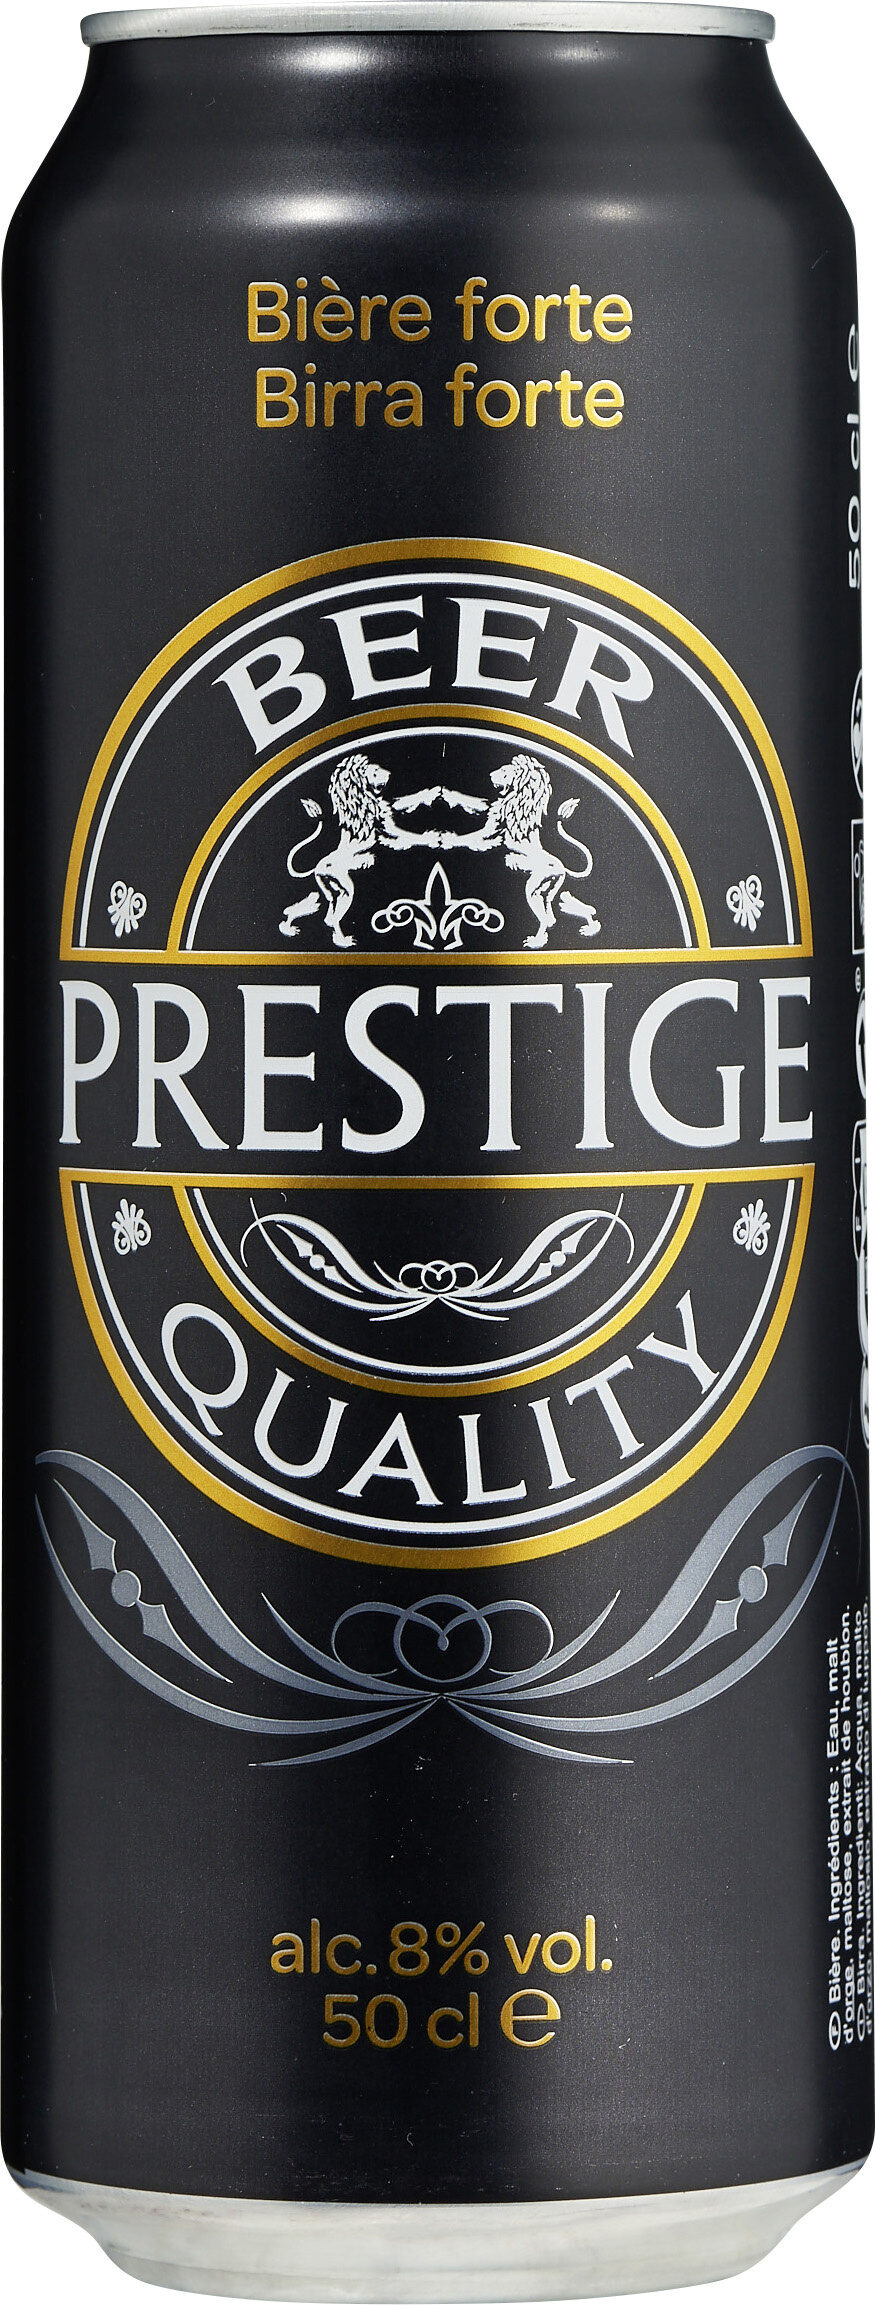 Saer-brau prestige - Produkt - fr